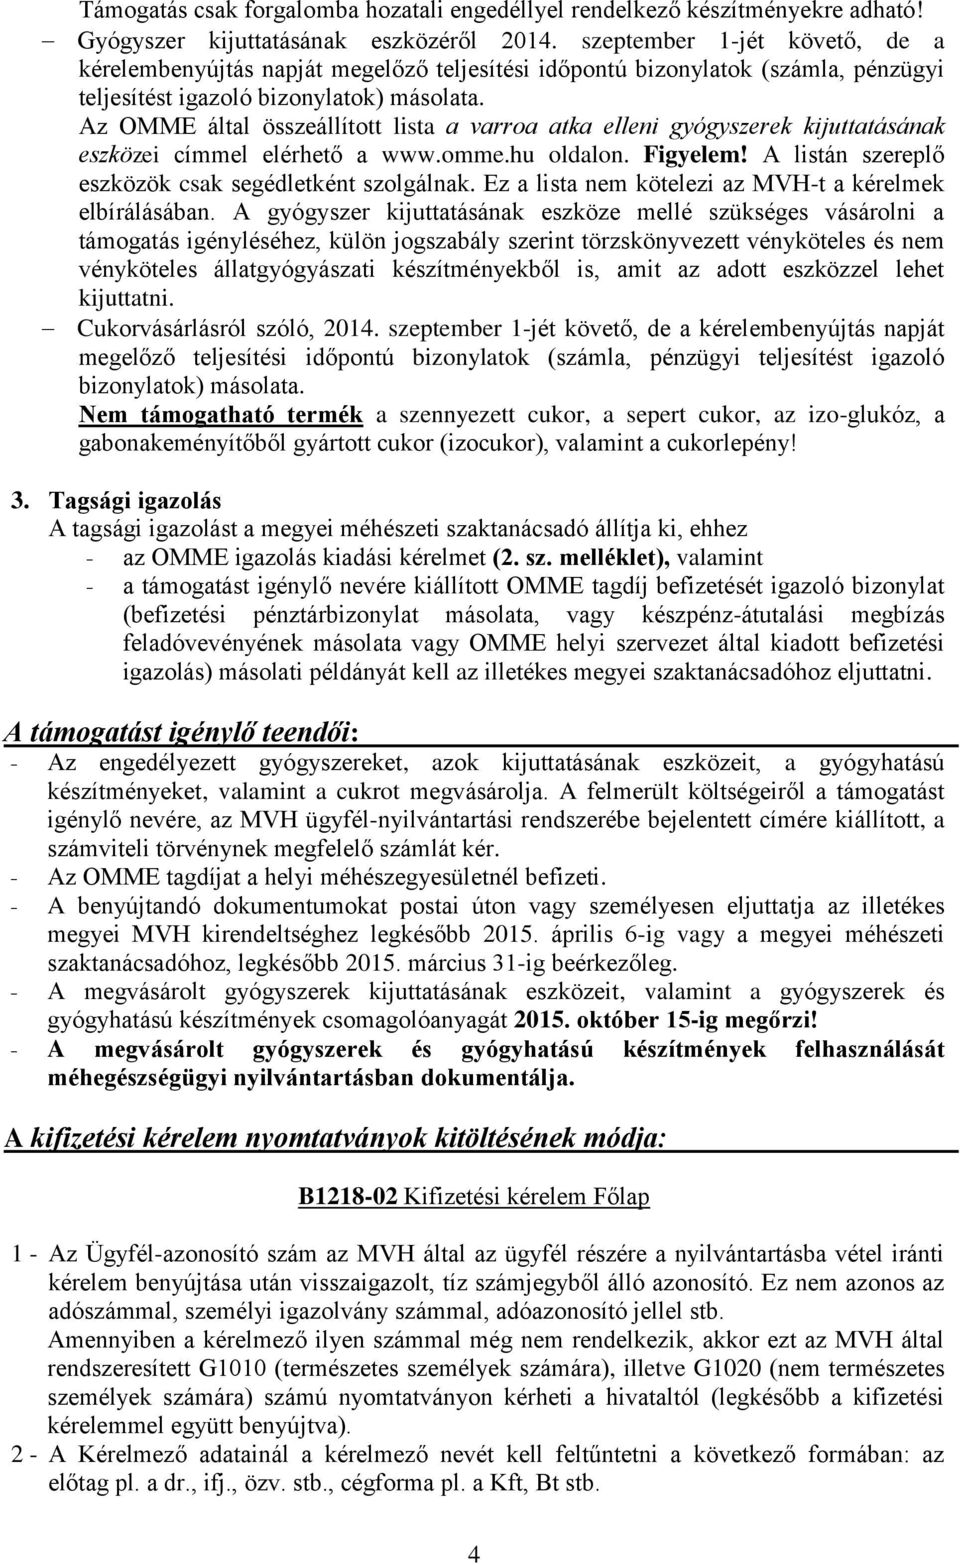 Az OMME által összeállított lista a varroa atka elleni gyógyszerek kijuttatásának eszközei címmel elérhető a www.omme.hu oldalon. Figyelem! A listán szereplő eszközök csak segédletként szolgálnak.